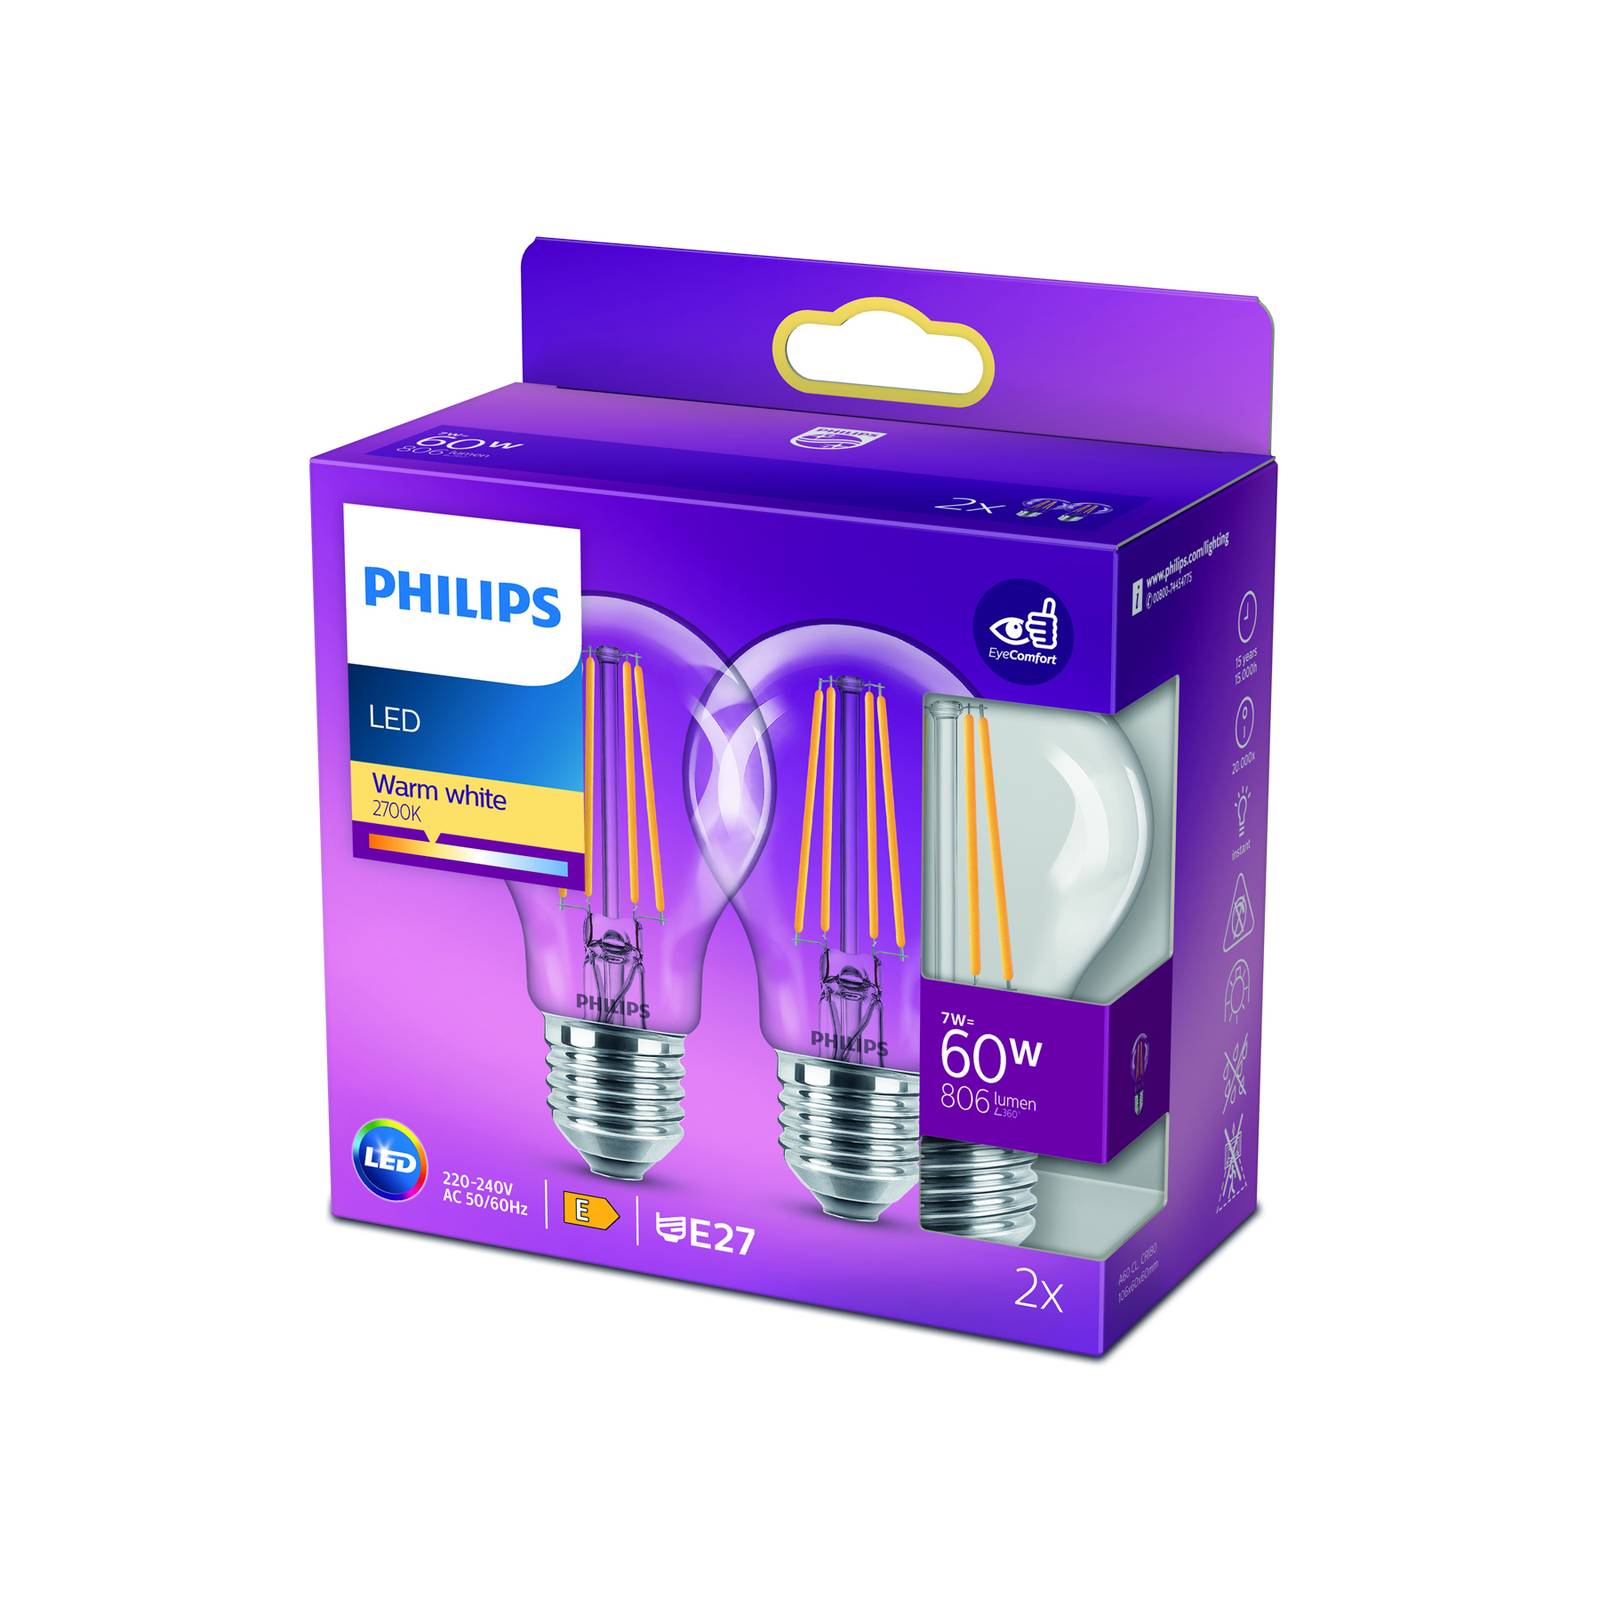 Philips LED-lampa E27 7W 2 700K glödtråd klar uppsättning med 2